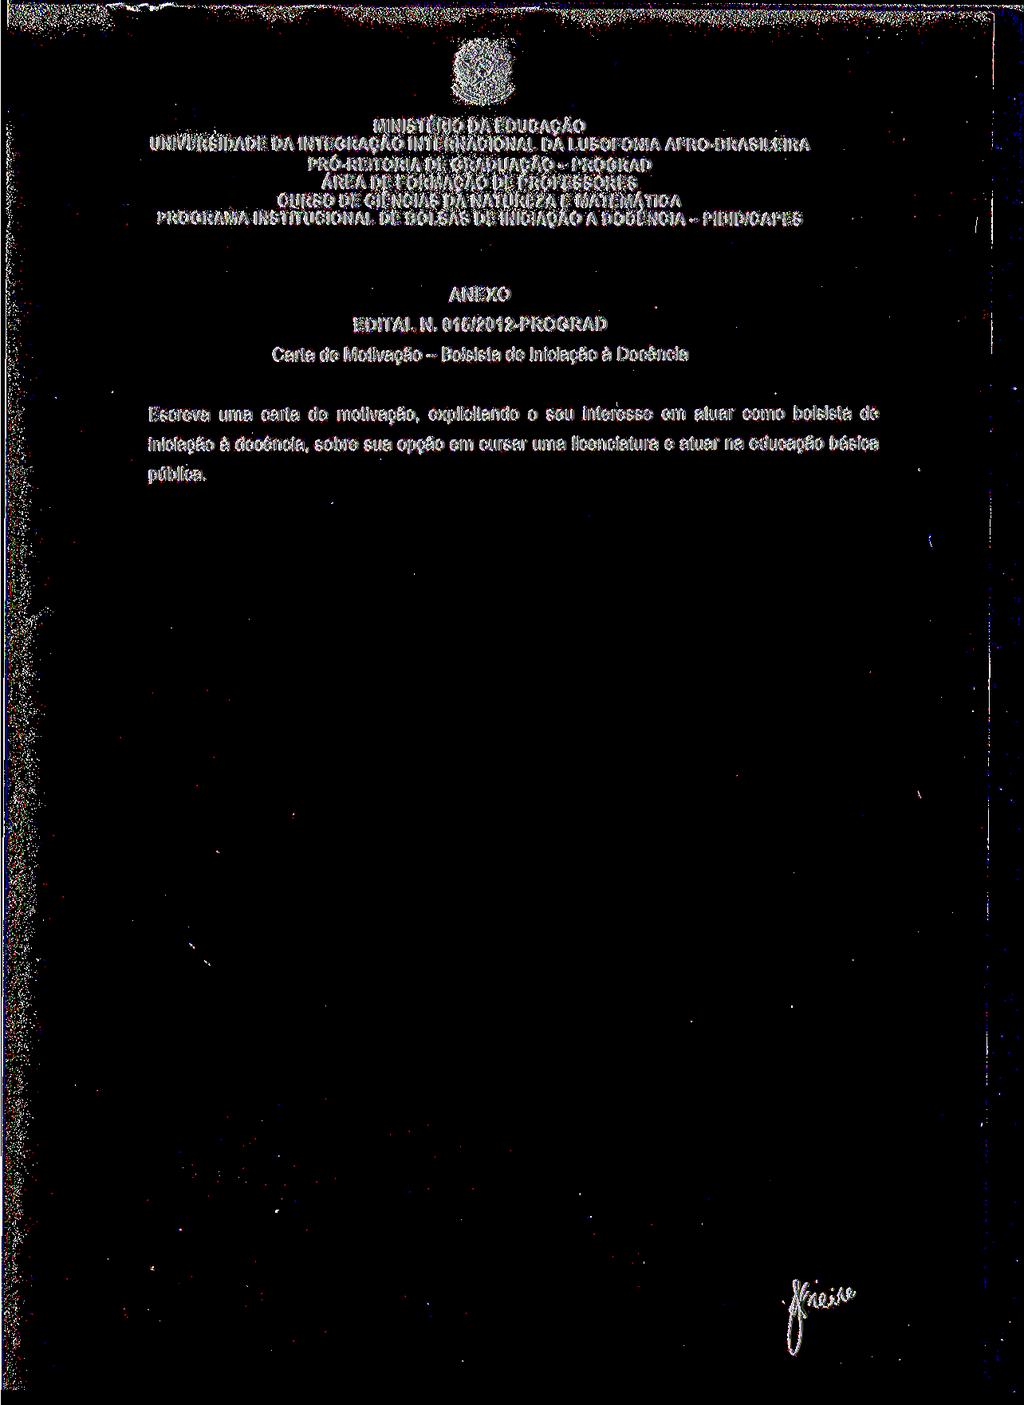 PROGRAMA INSTITUCIONAL DE BOLSAS DE INICIAÇÃO A DOCÊNCIA - PIBID/CAPES ANEXO EDITAL N.